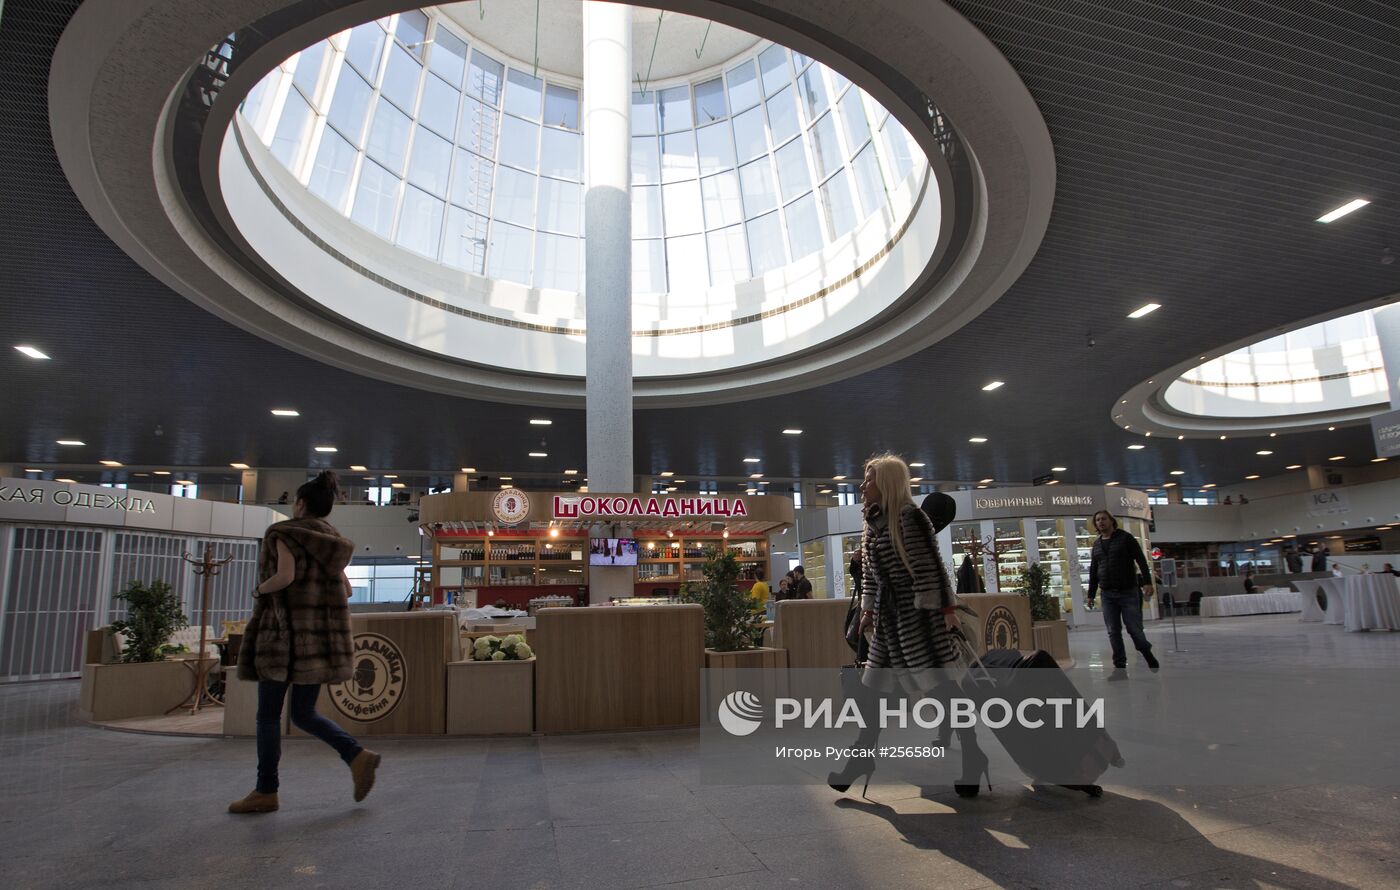 Открытие реконструированного терминала аэропорта "Пулково-1"